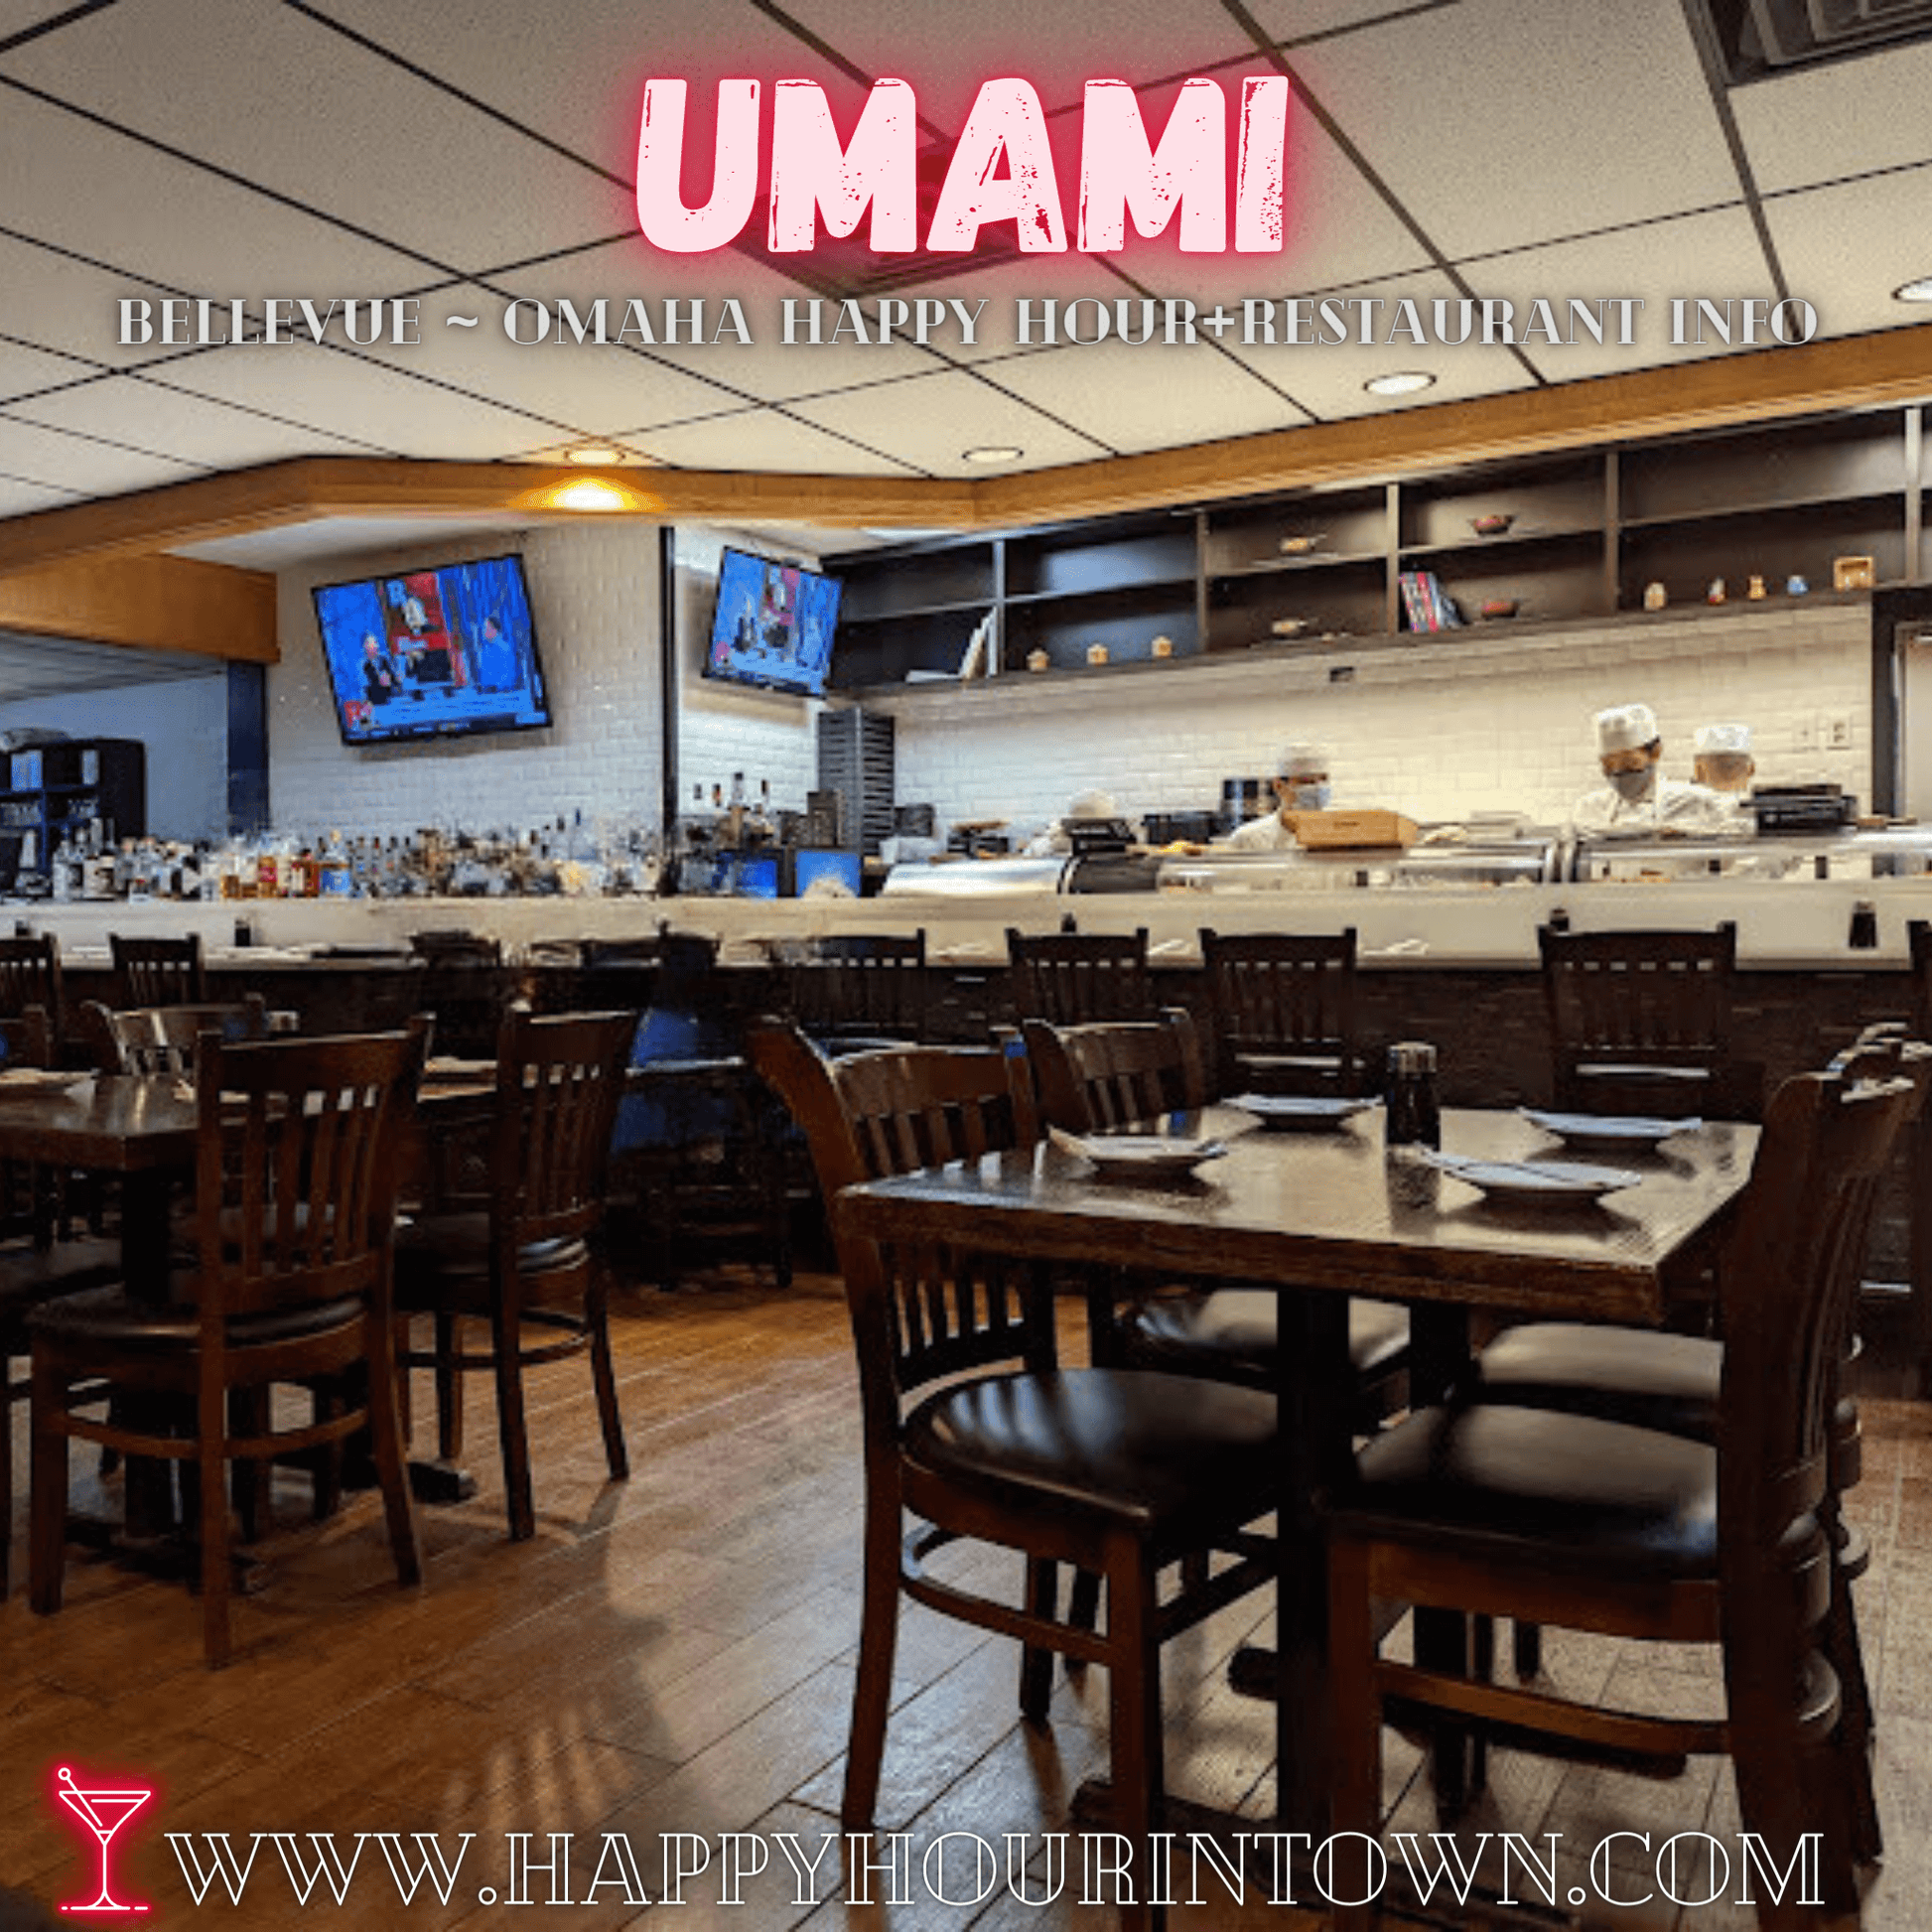 Umami Restaurant Bellevue Nebraska Happy Hour In Town